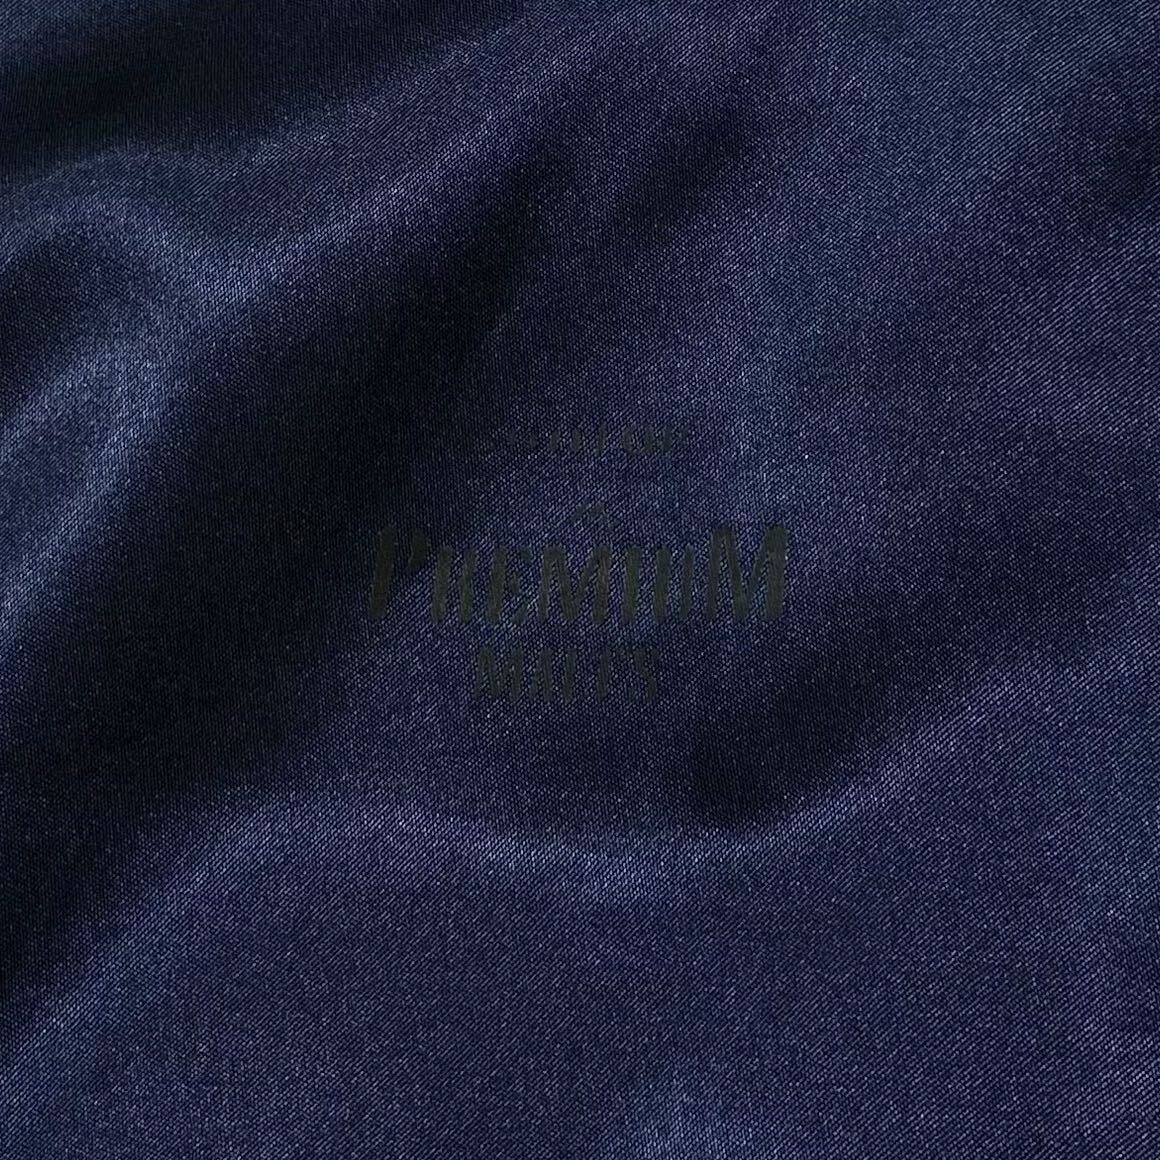  矢沢永吉/PREMIUM MALT'S スカジャン メンズL相当 ネイビー シャンパンゴールド系 背面刺繍ロゴ YAZAWA 中綿無し サテンジャケットの画像10